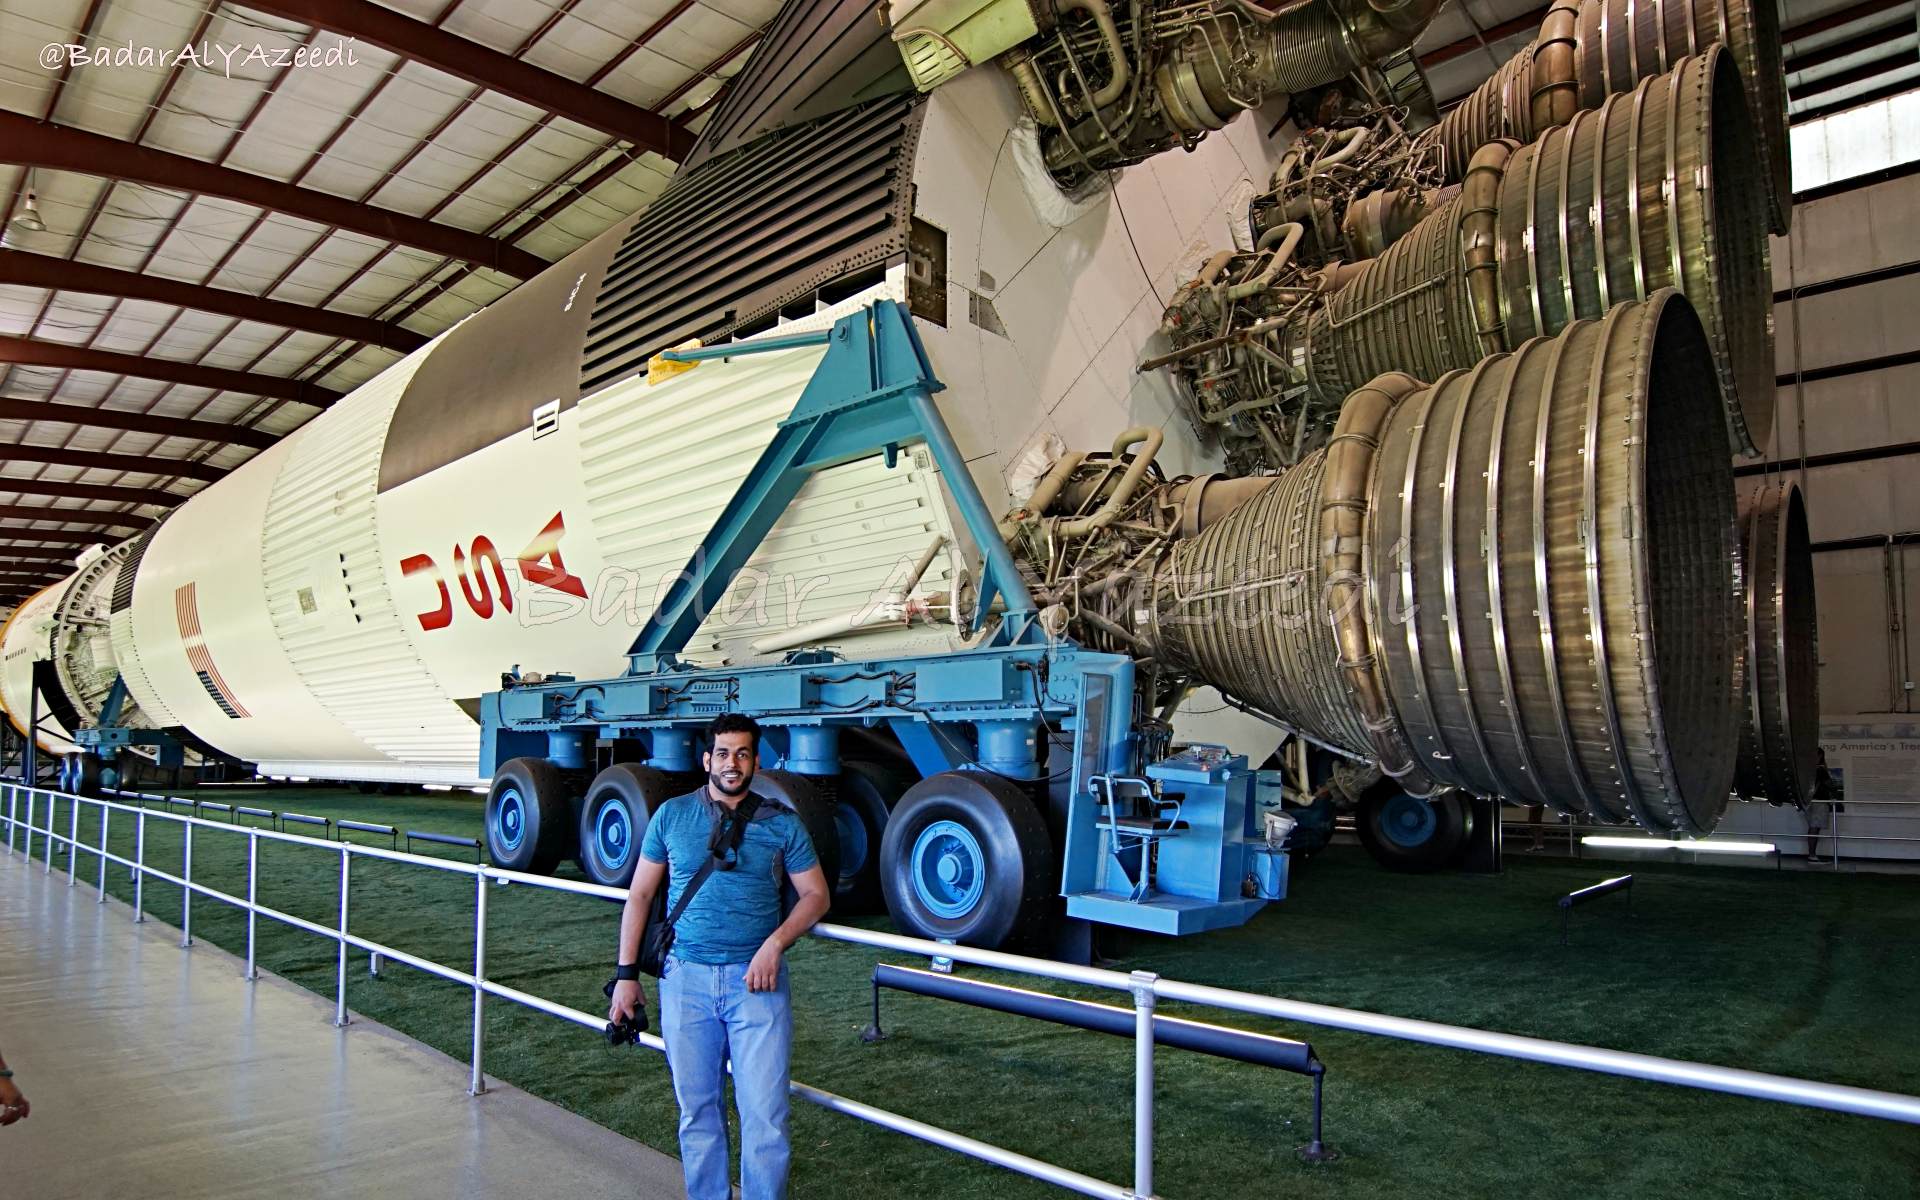 Badar Al Yazeedi Center Houston Space